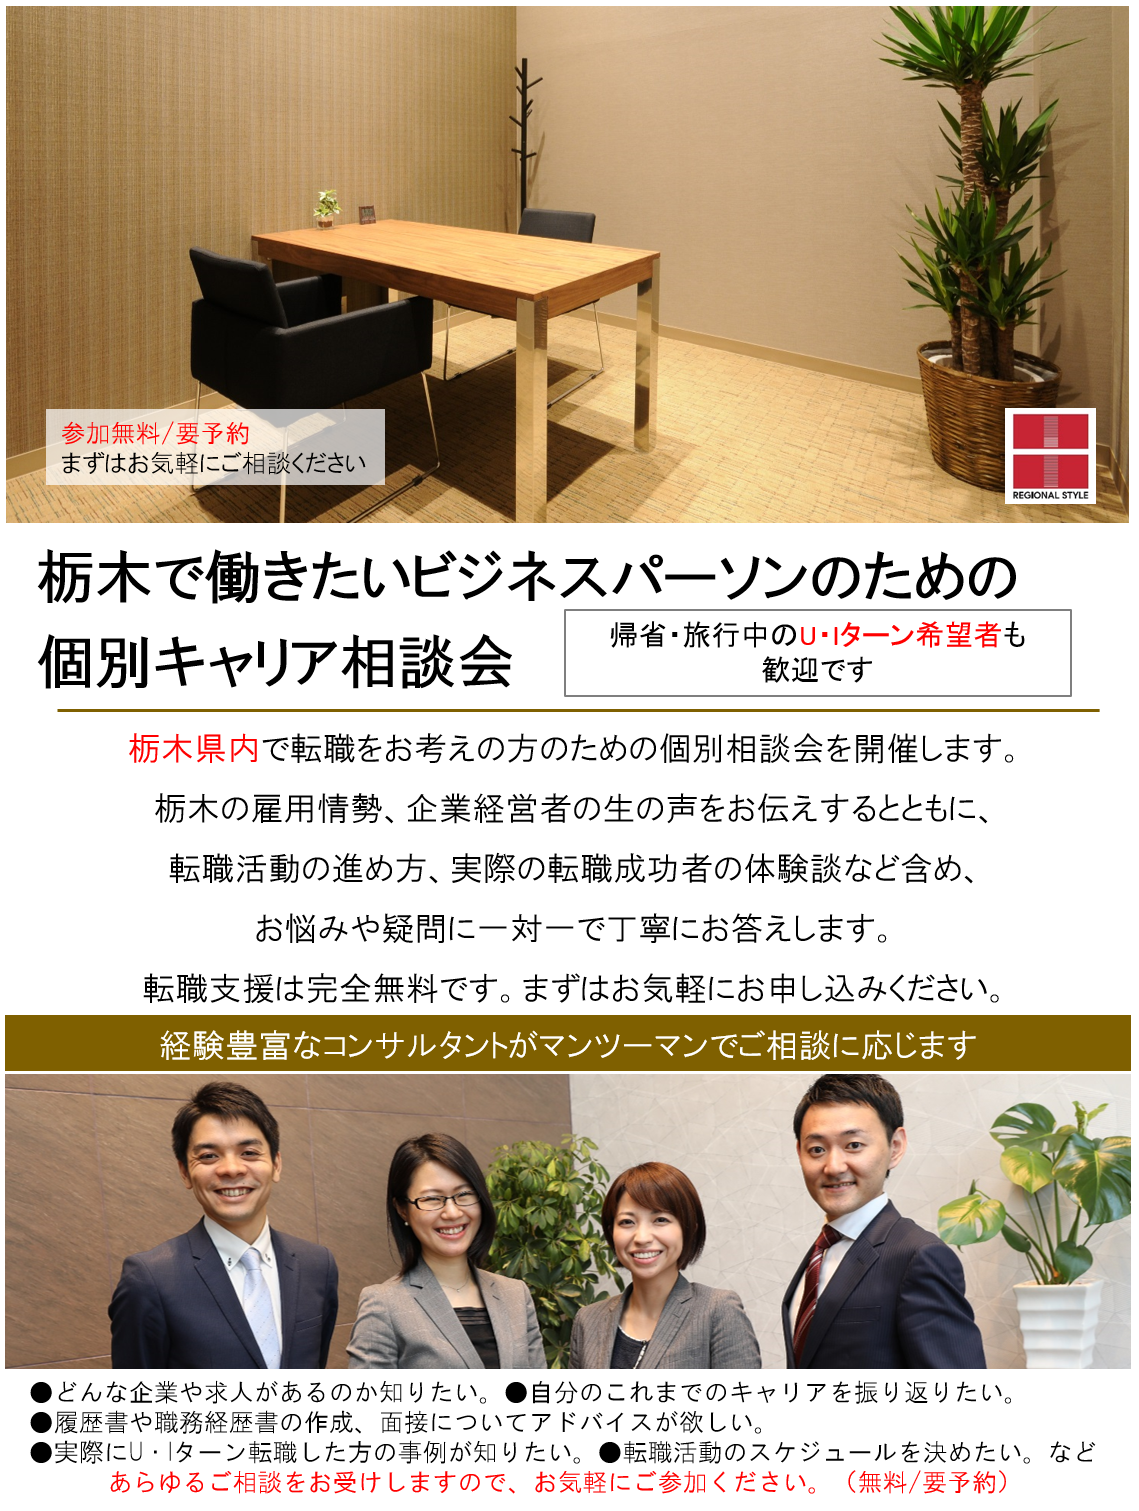 http://www.regional.co.jp/career_mt/04280506totigigw.png